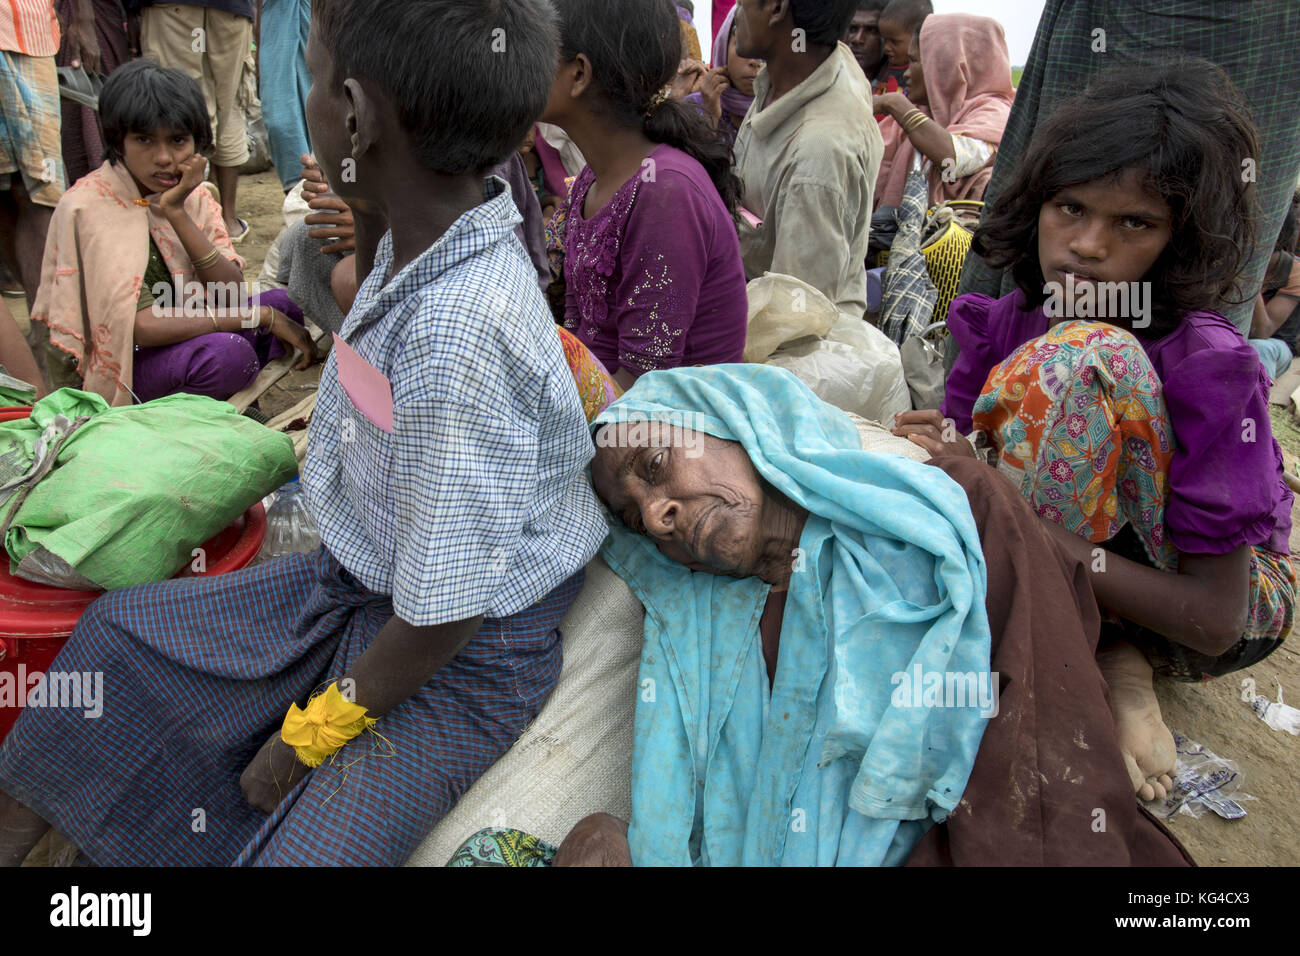 2 novembre 2017 - novembre 02, 2017 Cox's bazar, le Bangladesh ''" après avoir traversé le fleuve Naf réfugiés rohingyas femme attendant dans la vieillesse pas de frontière terrestre mans zone à entré dans anjumanpara au Bangladesh, Bangladesh coxsbazar. Selon le HCR, 607 000 réfugiés Rohingyas ont fui la violence de l'État de Rakhine au Myanmar depuis le 25 août 2017, la plupart en tentant de traverser la frontière et rejoindre le Bangladesh. crédit : k m asad/zuma/Alamy fil live news Banque D'Images